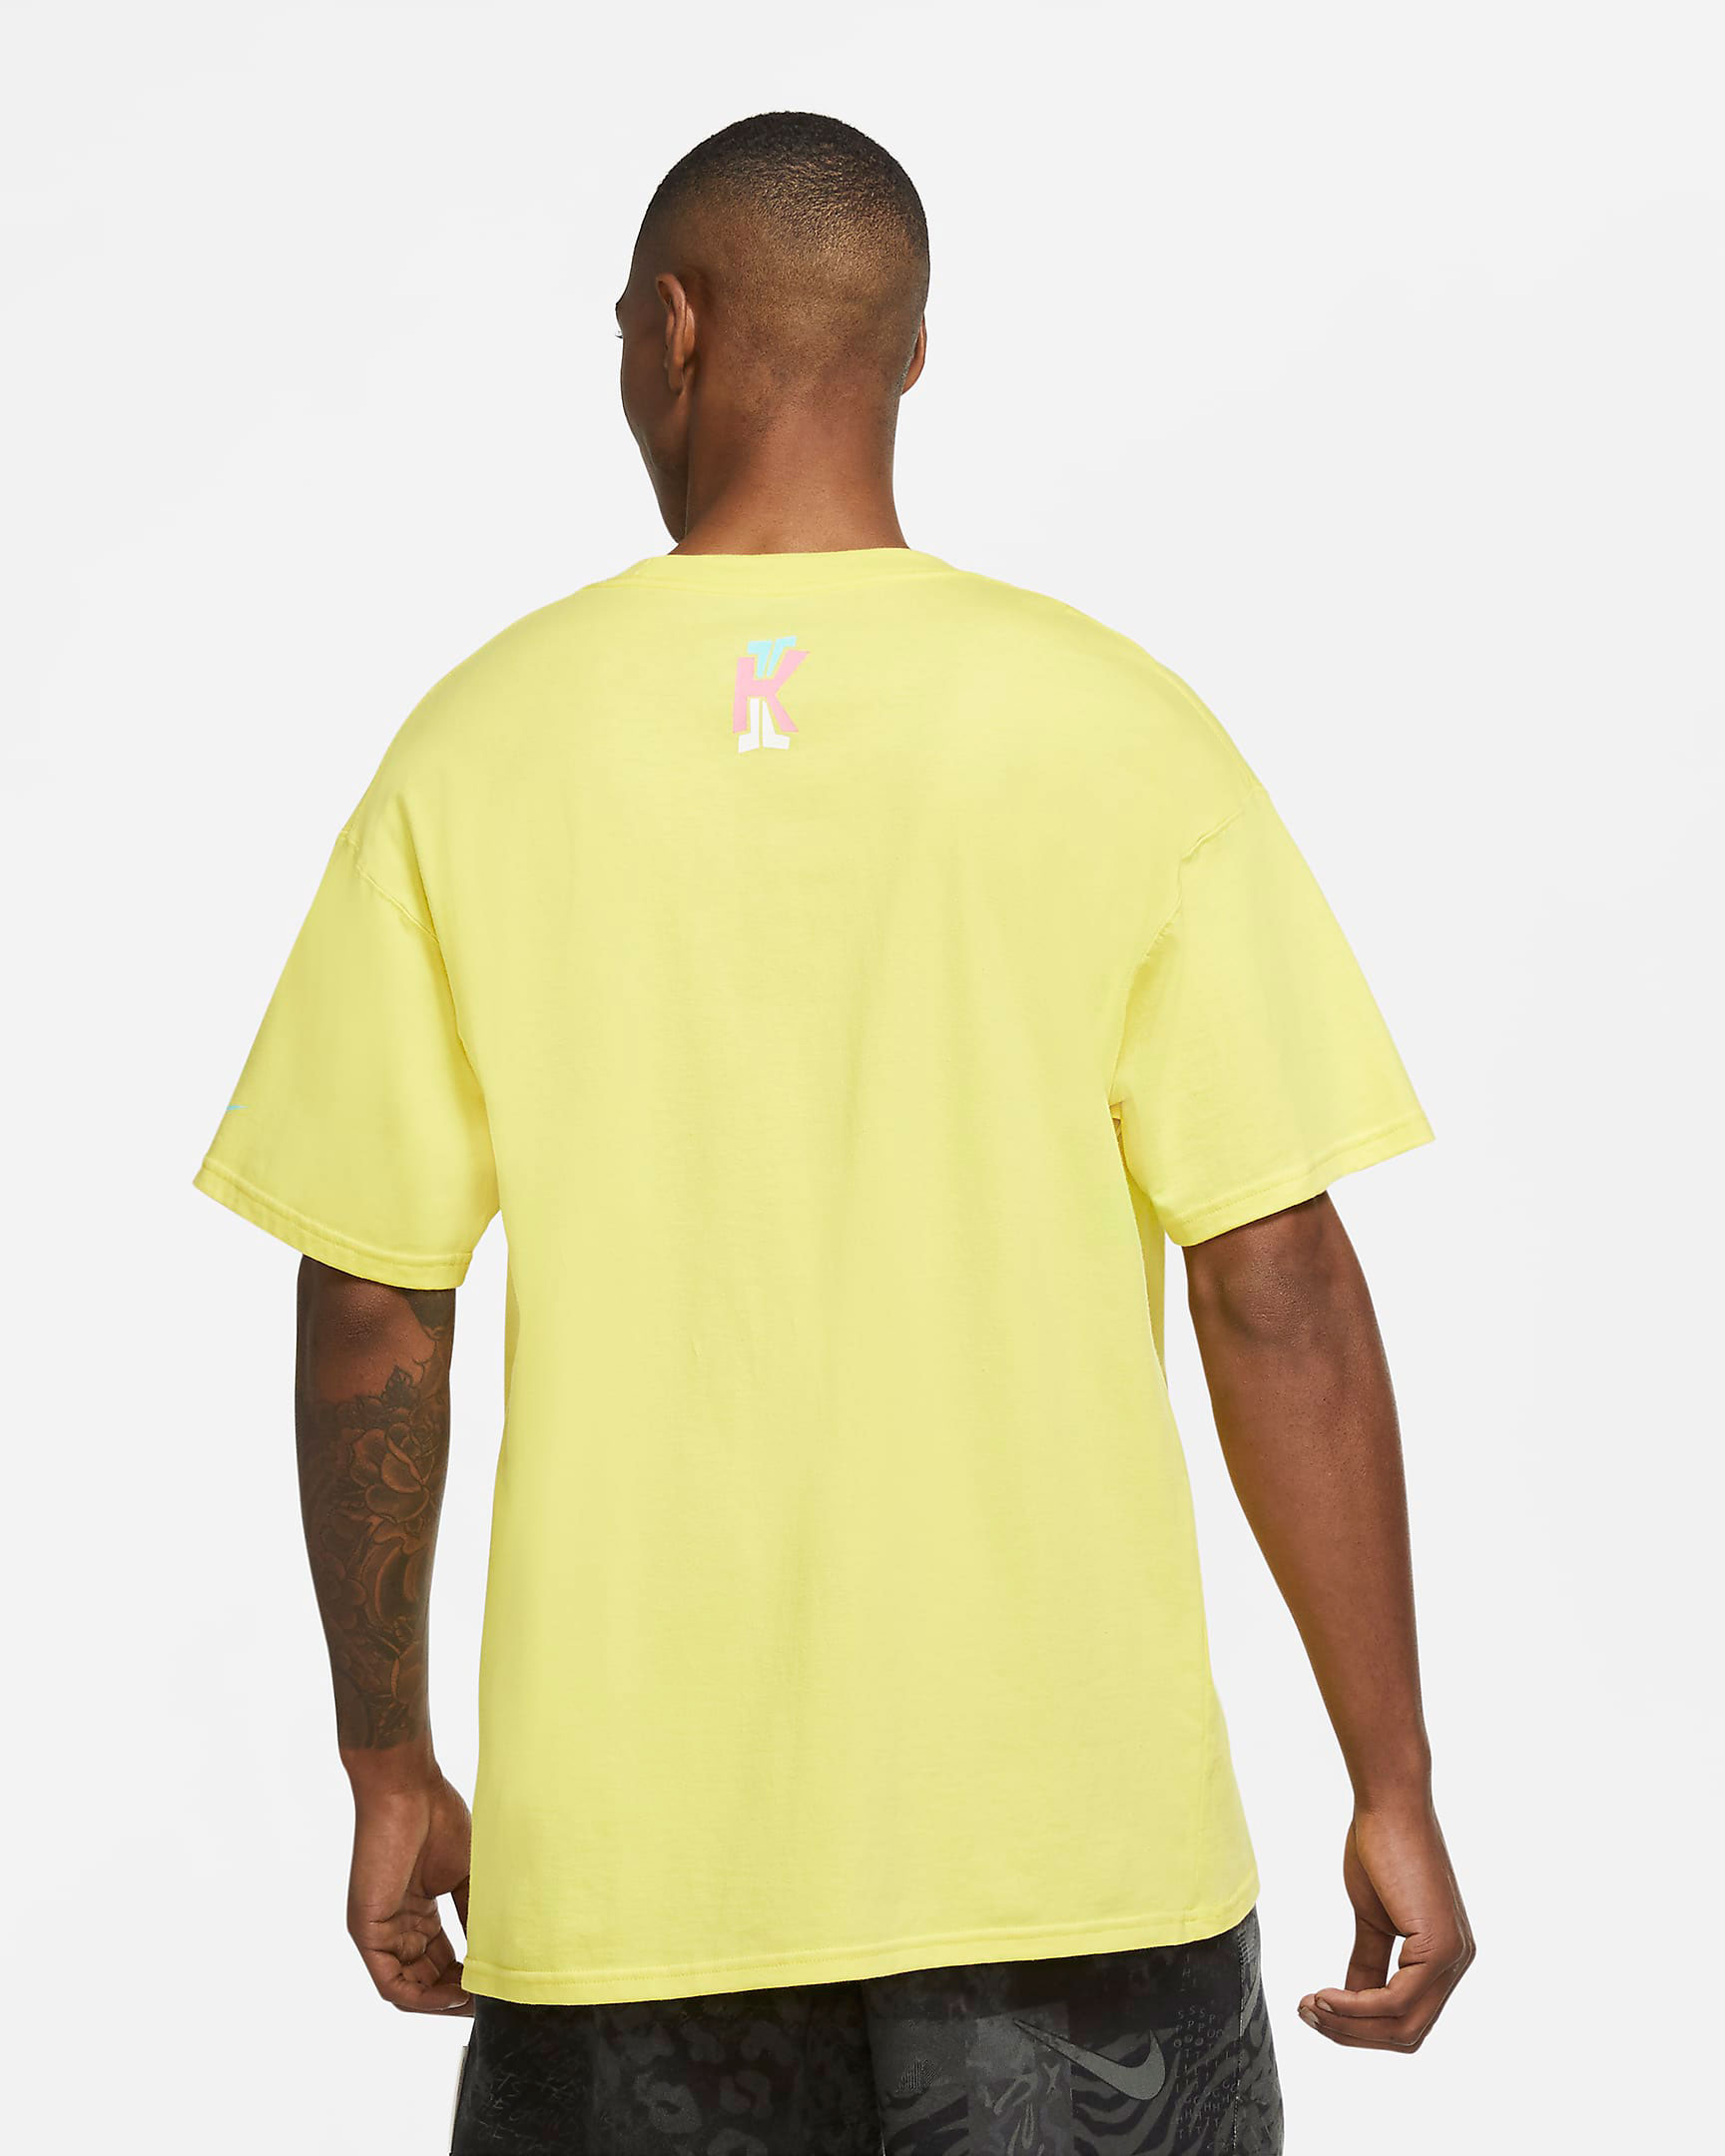 nike-kybrid-s2-pineapple-shirt-2